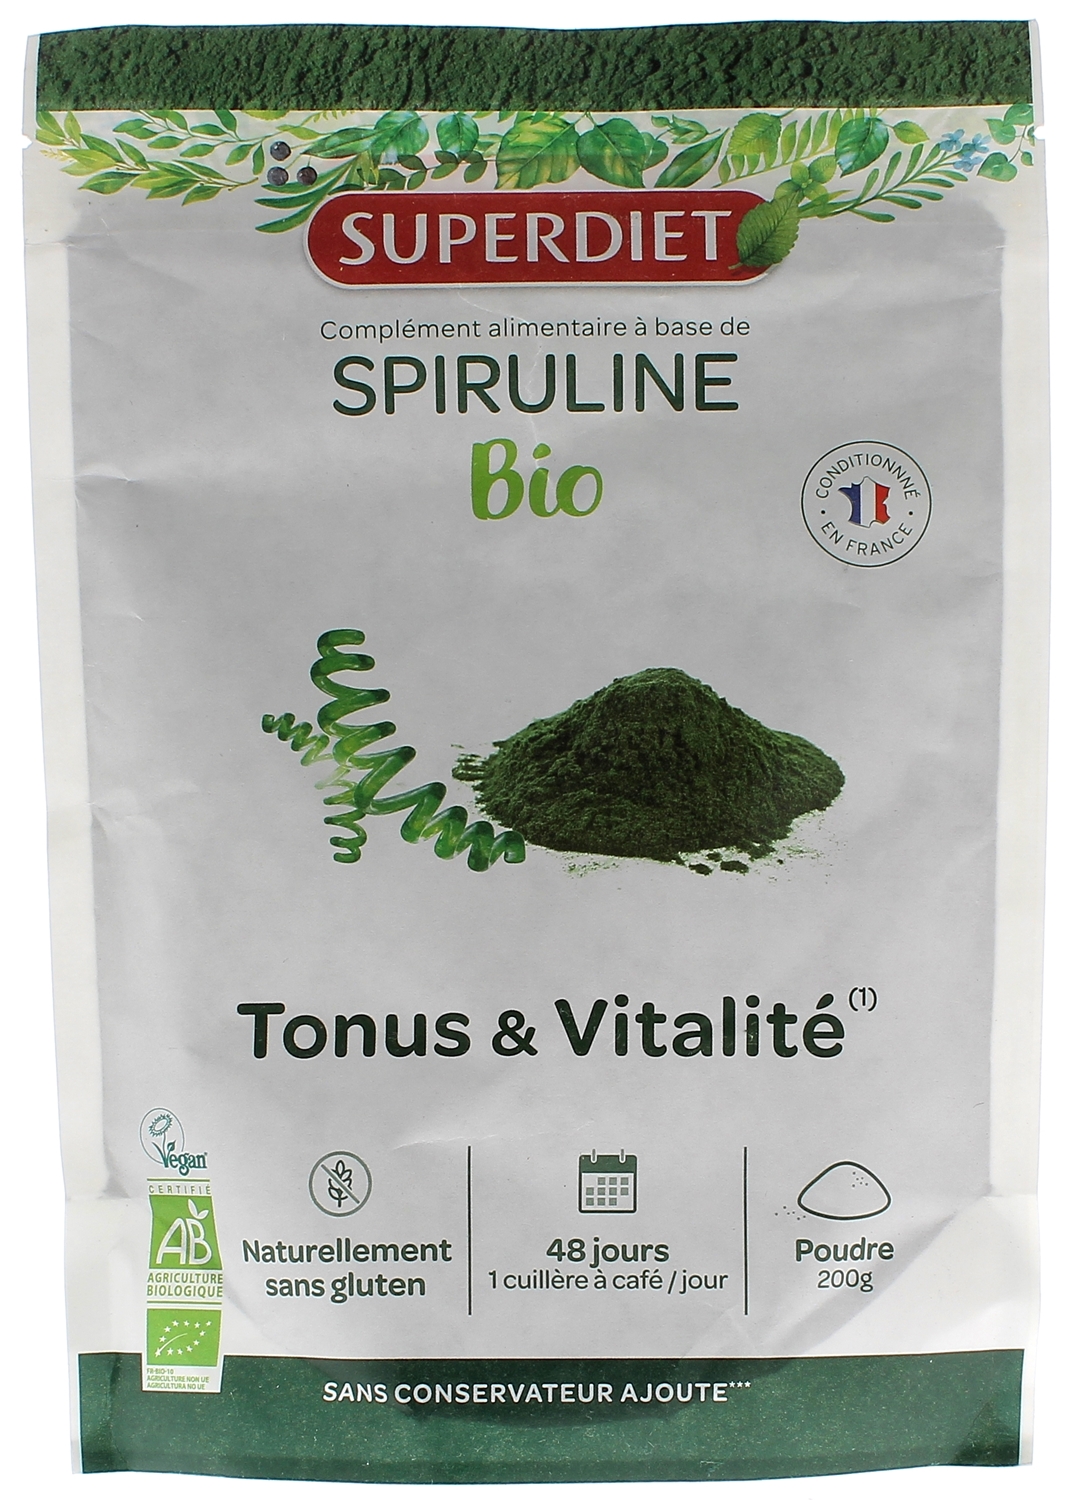 Spiruline bio poudre SuperDiet - complément alimentaire tonus